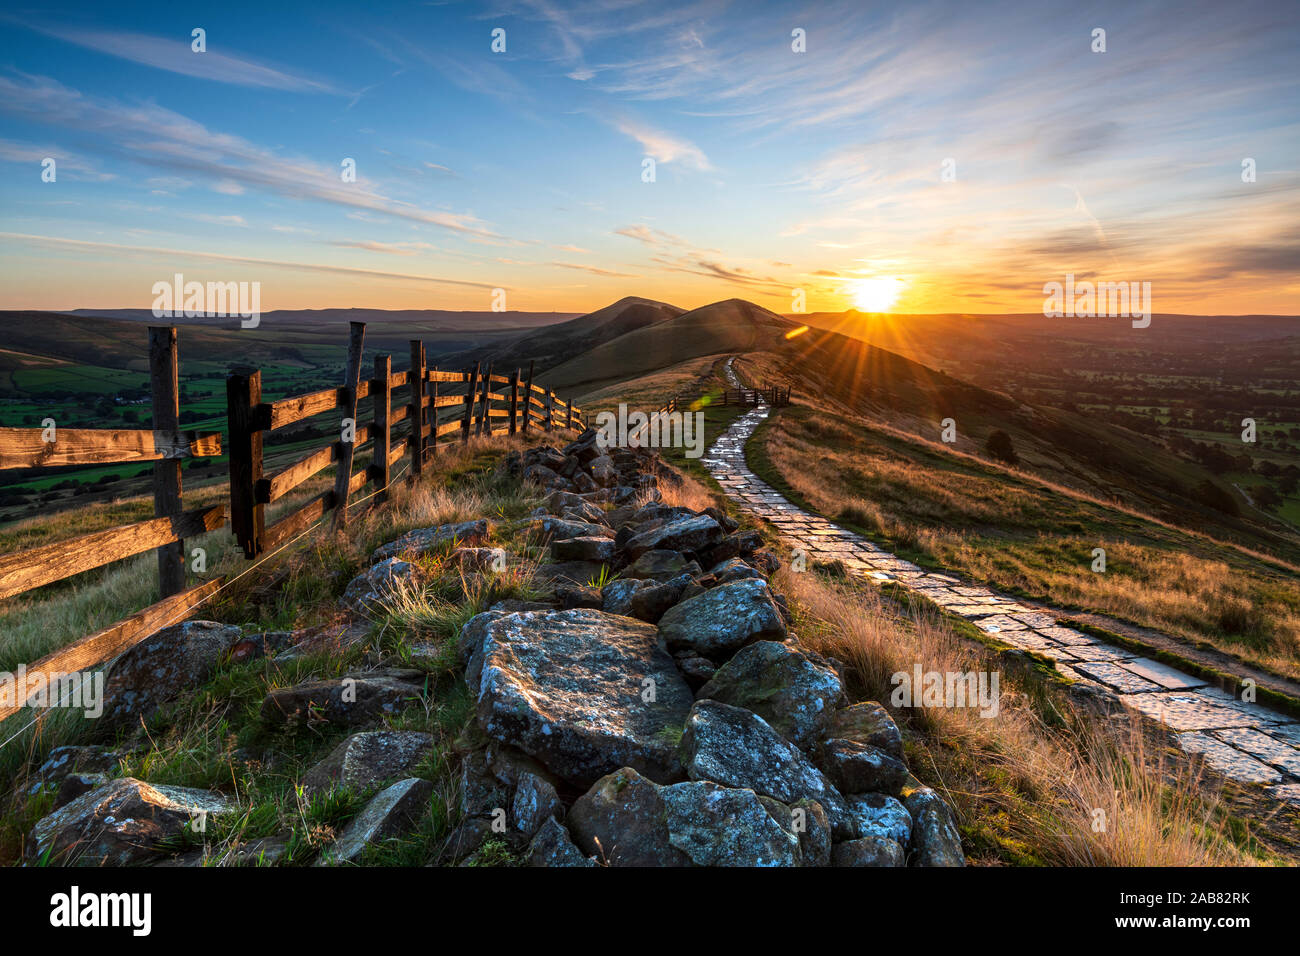 Lever du soleil au-dessus de perdre Hill et retour de Mam Tor Tor, espoir Vallée, Peak District, Derbyshire, Angleterre, Royaume-Uni, Europe Banque D'Images